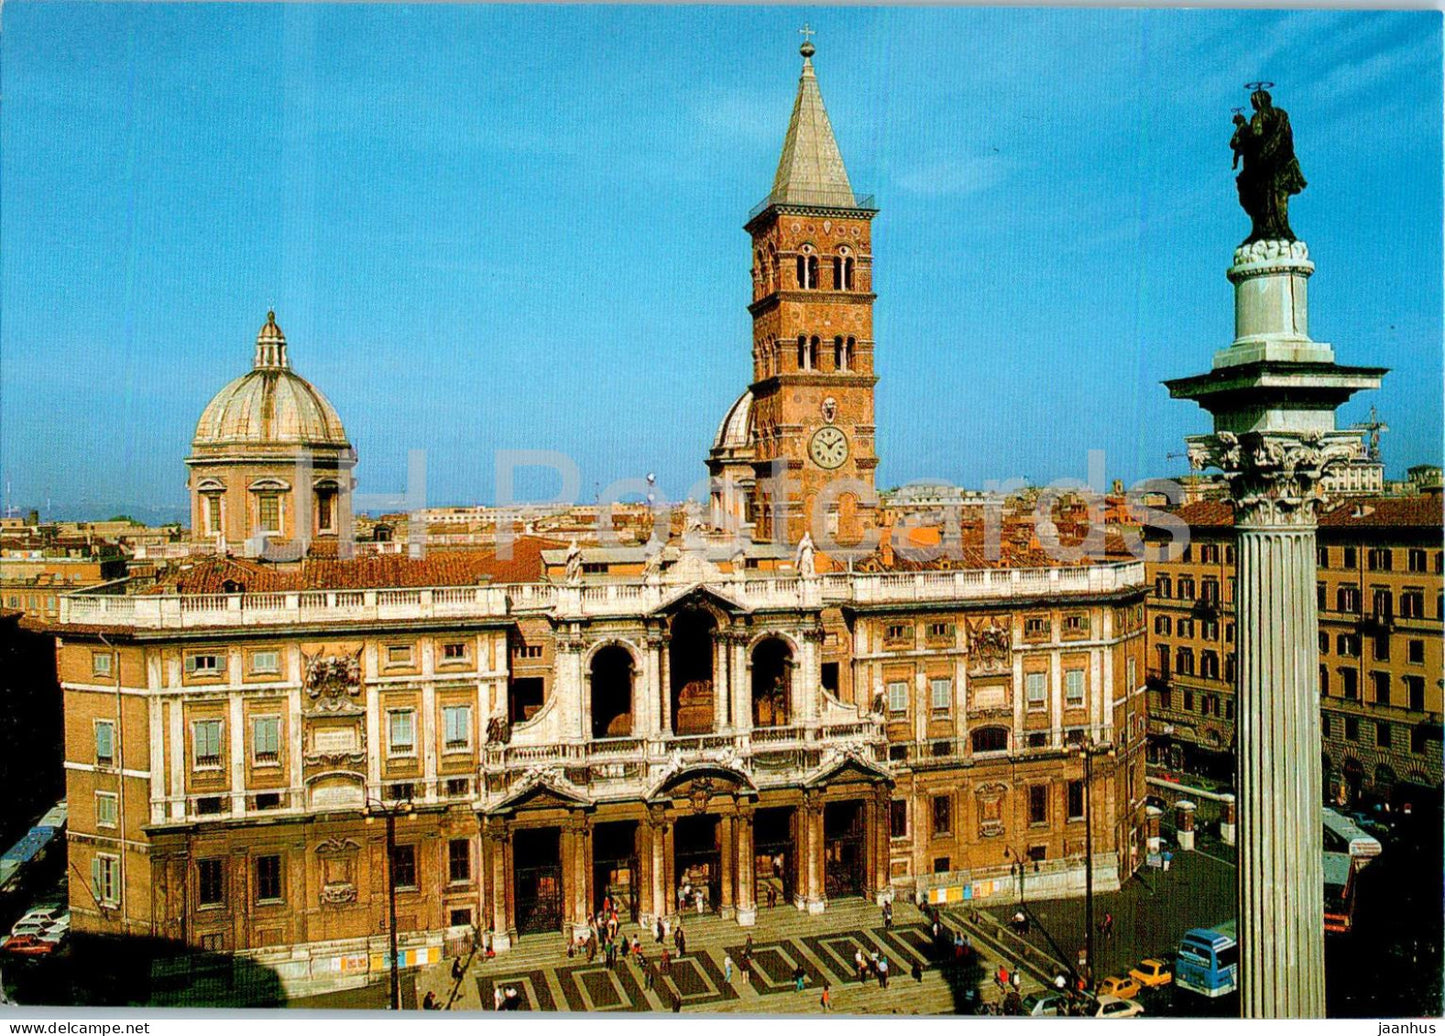 Roma - Rome - Basilica di S Maria Maggiore - basilica - 573 - Italy - unused - JH Postcards